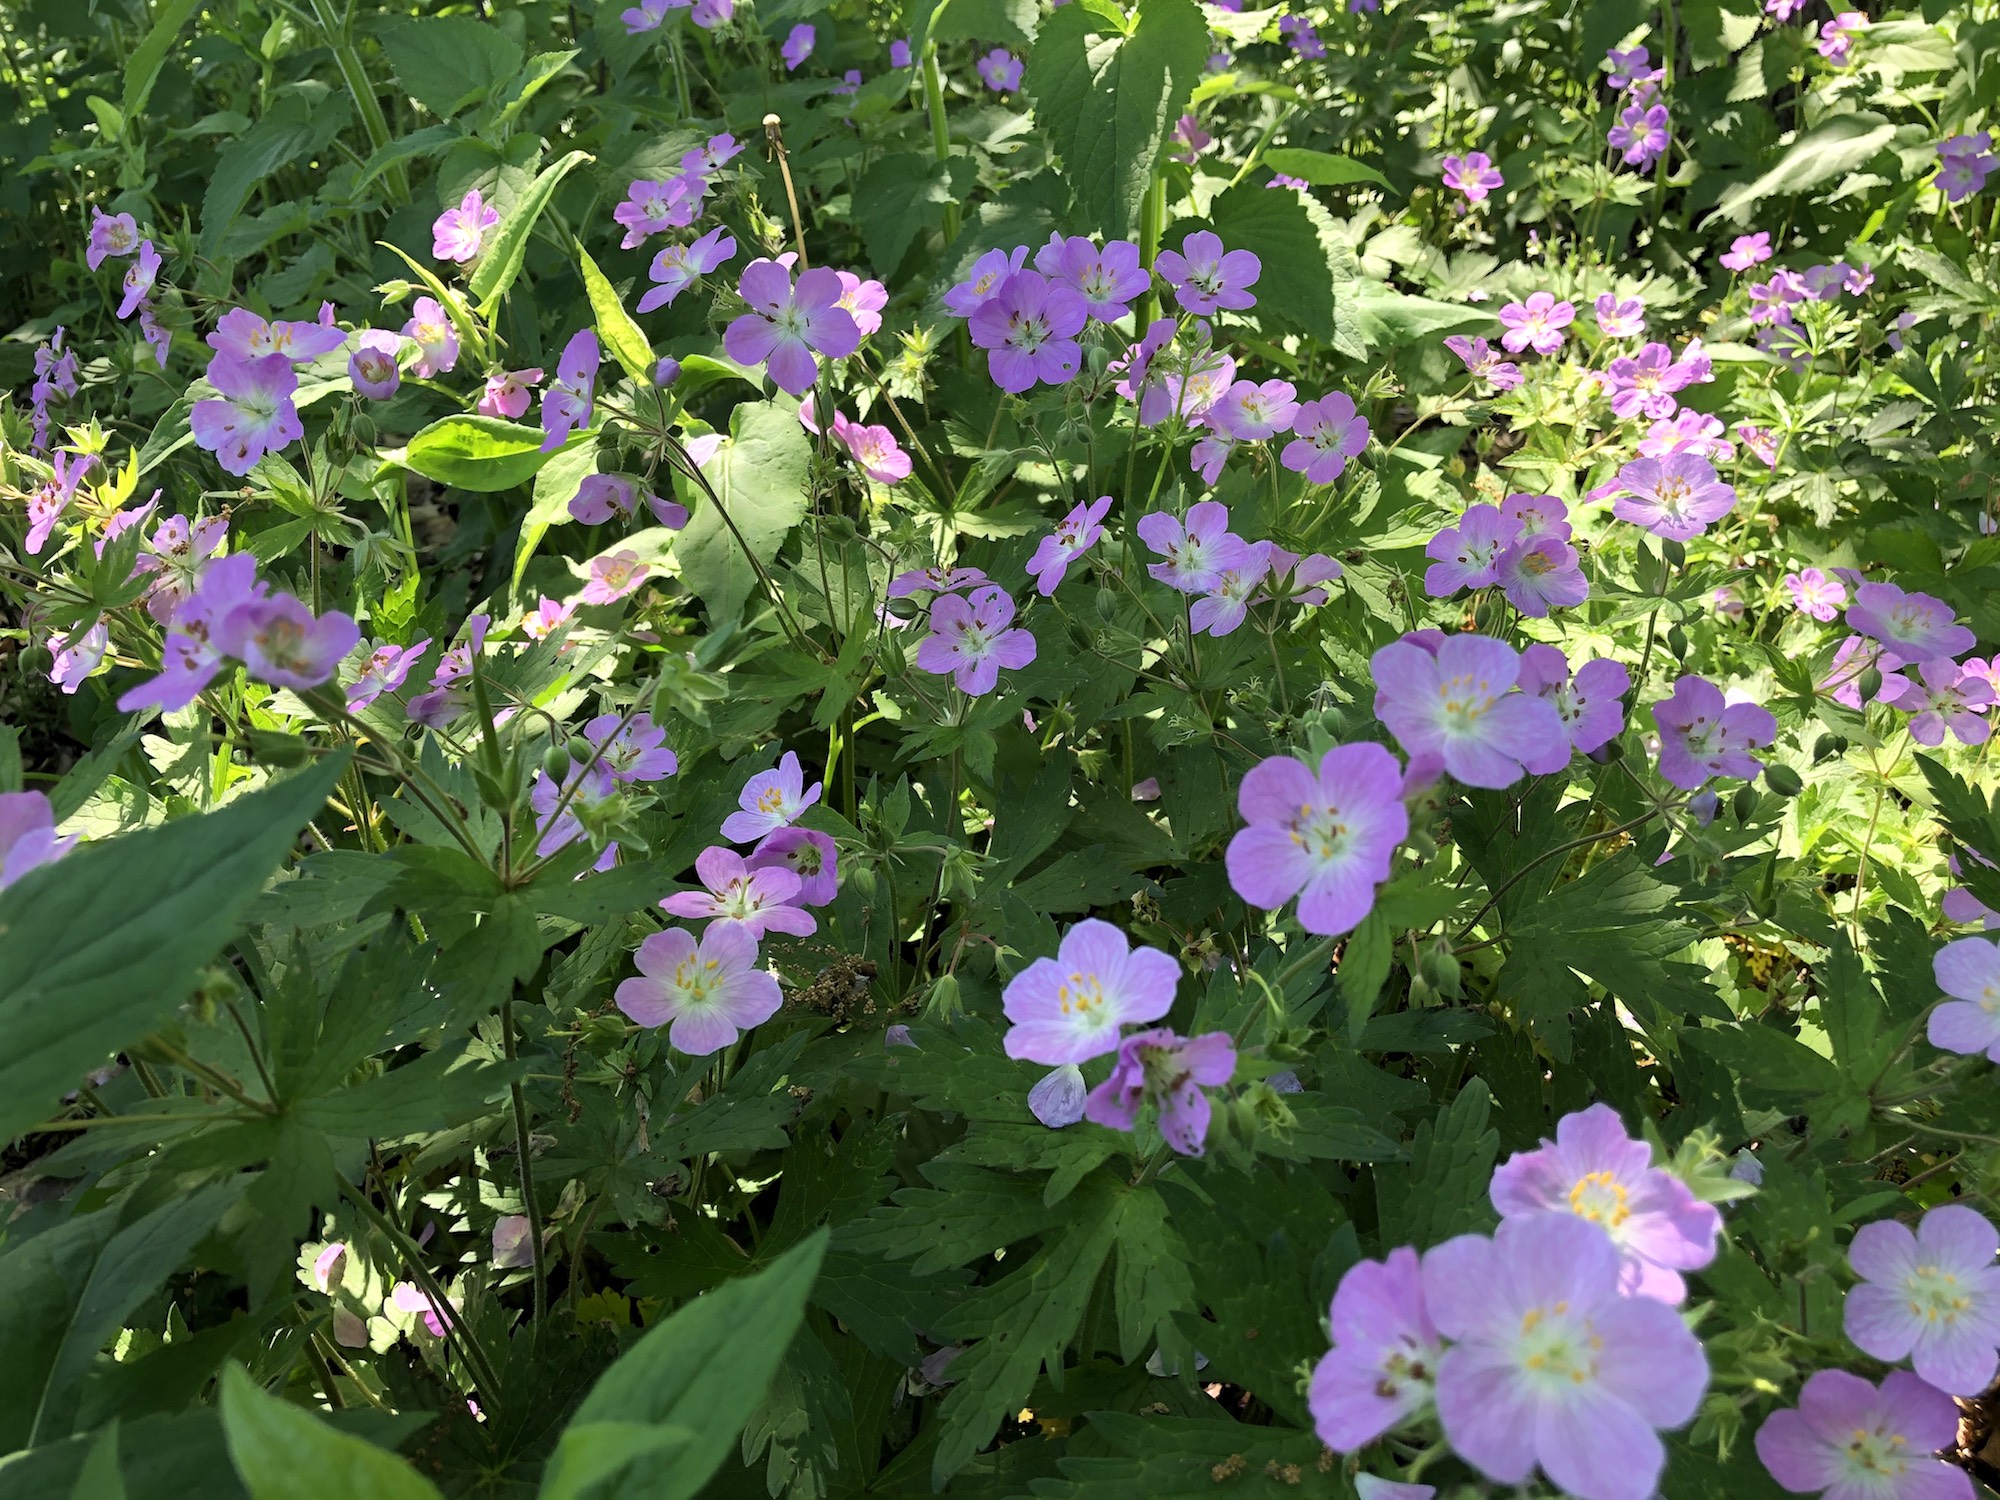 Wild Geranium in UW Arboretum near Visitors Center in Madison, Wisconsin on May 22, 2021.